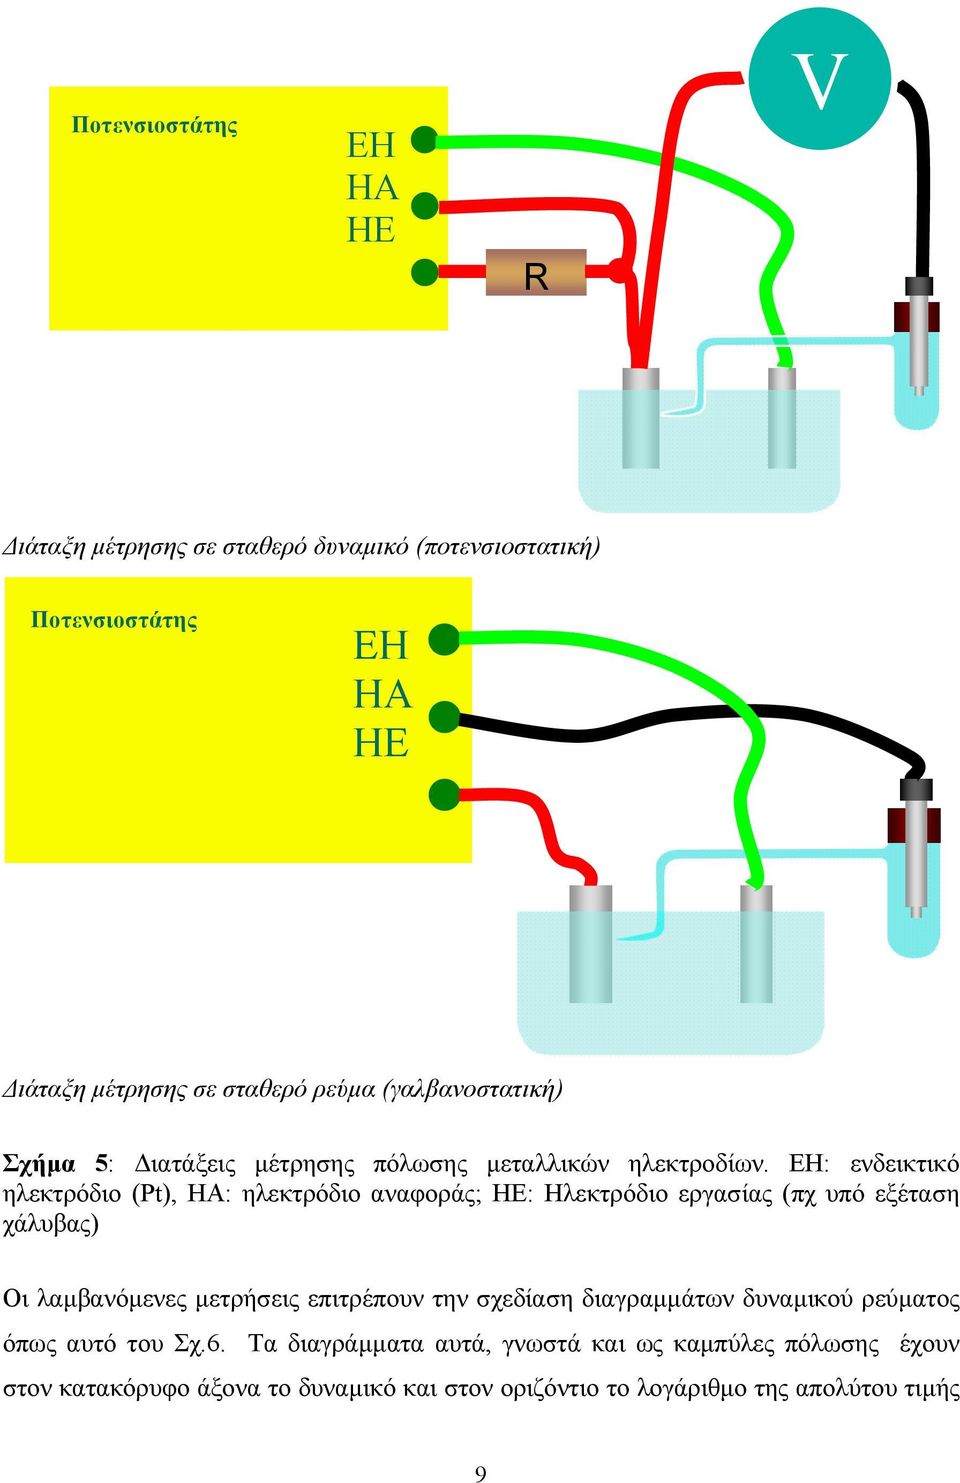 ΕΗ: ενδεικτικό ηλεκτρόδιο (Pt), ΗΑ: ηλεκτρόδιο αναφοράς; ΗΕ: Ηλεκτρόδιο εργασίας (πχ υπό εξέταση χάλυβας) Οι λαµβανόµενες µετρήσεις